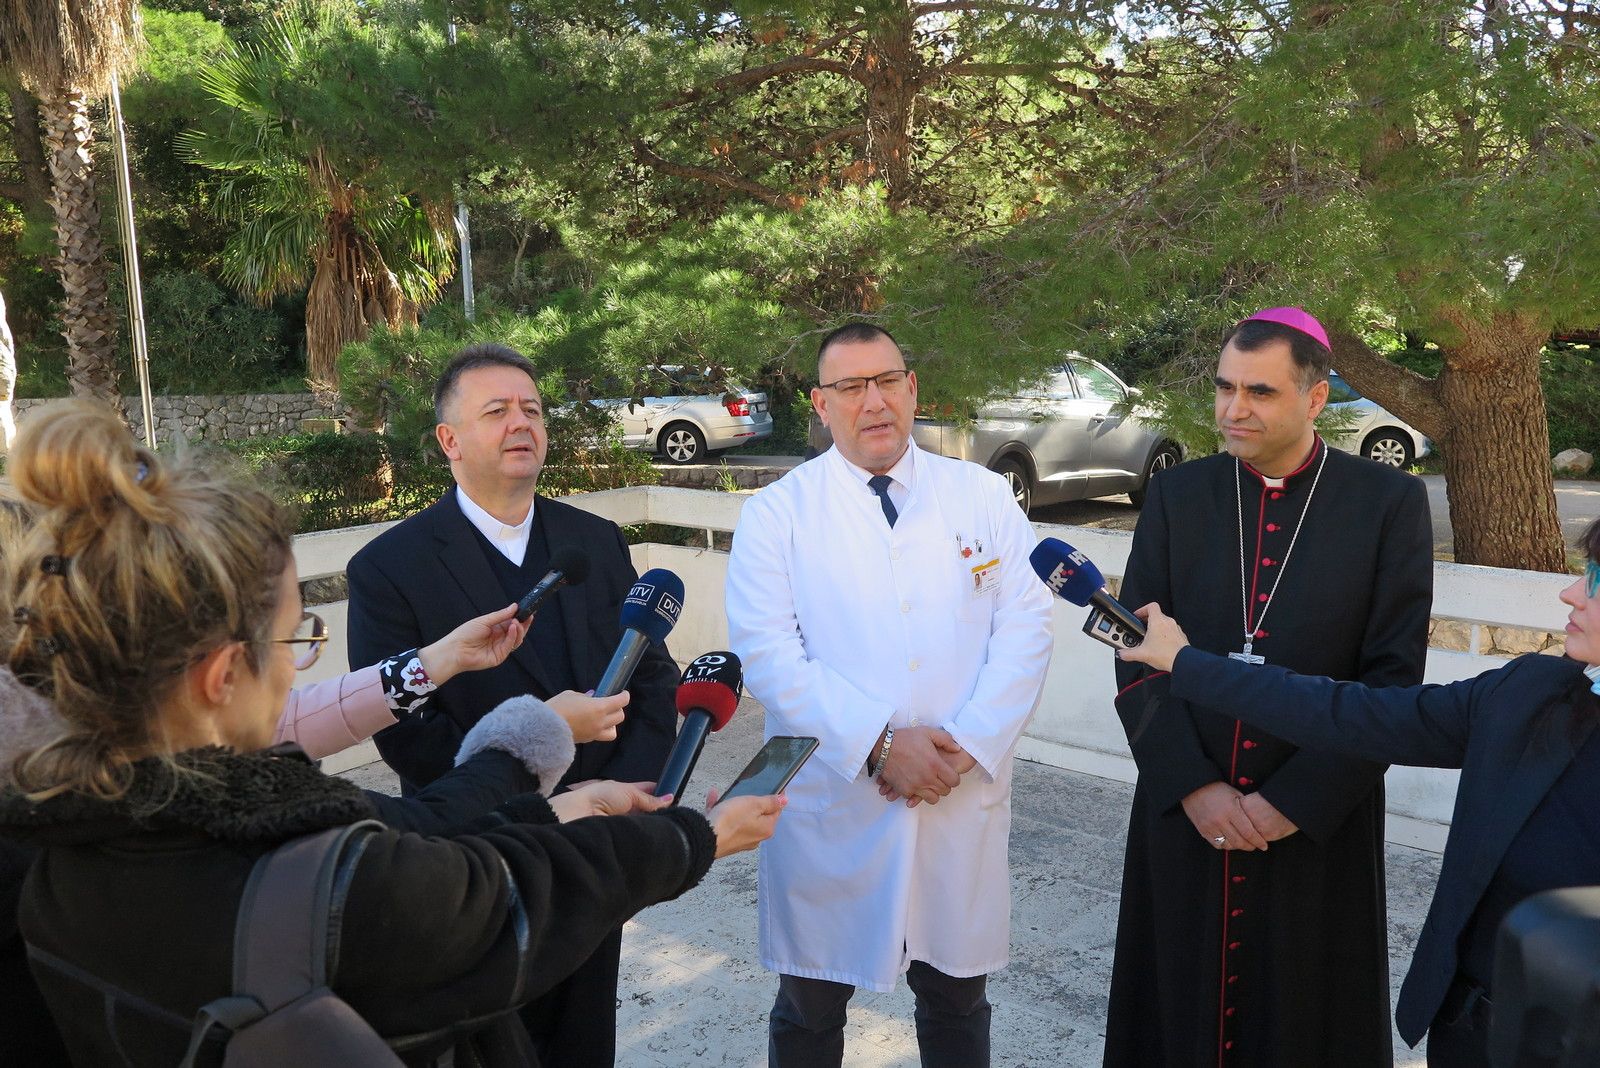 vjernici dubrovačke biskupije donirali 152 000 kn za tri aparata za trudnice u općoj bolnici Dubrovnik